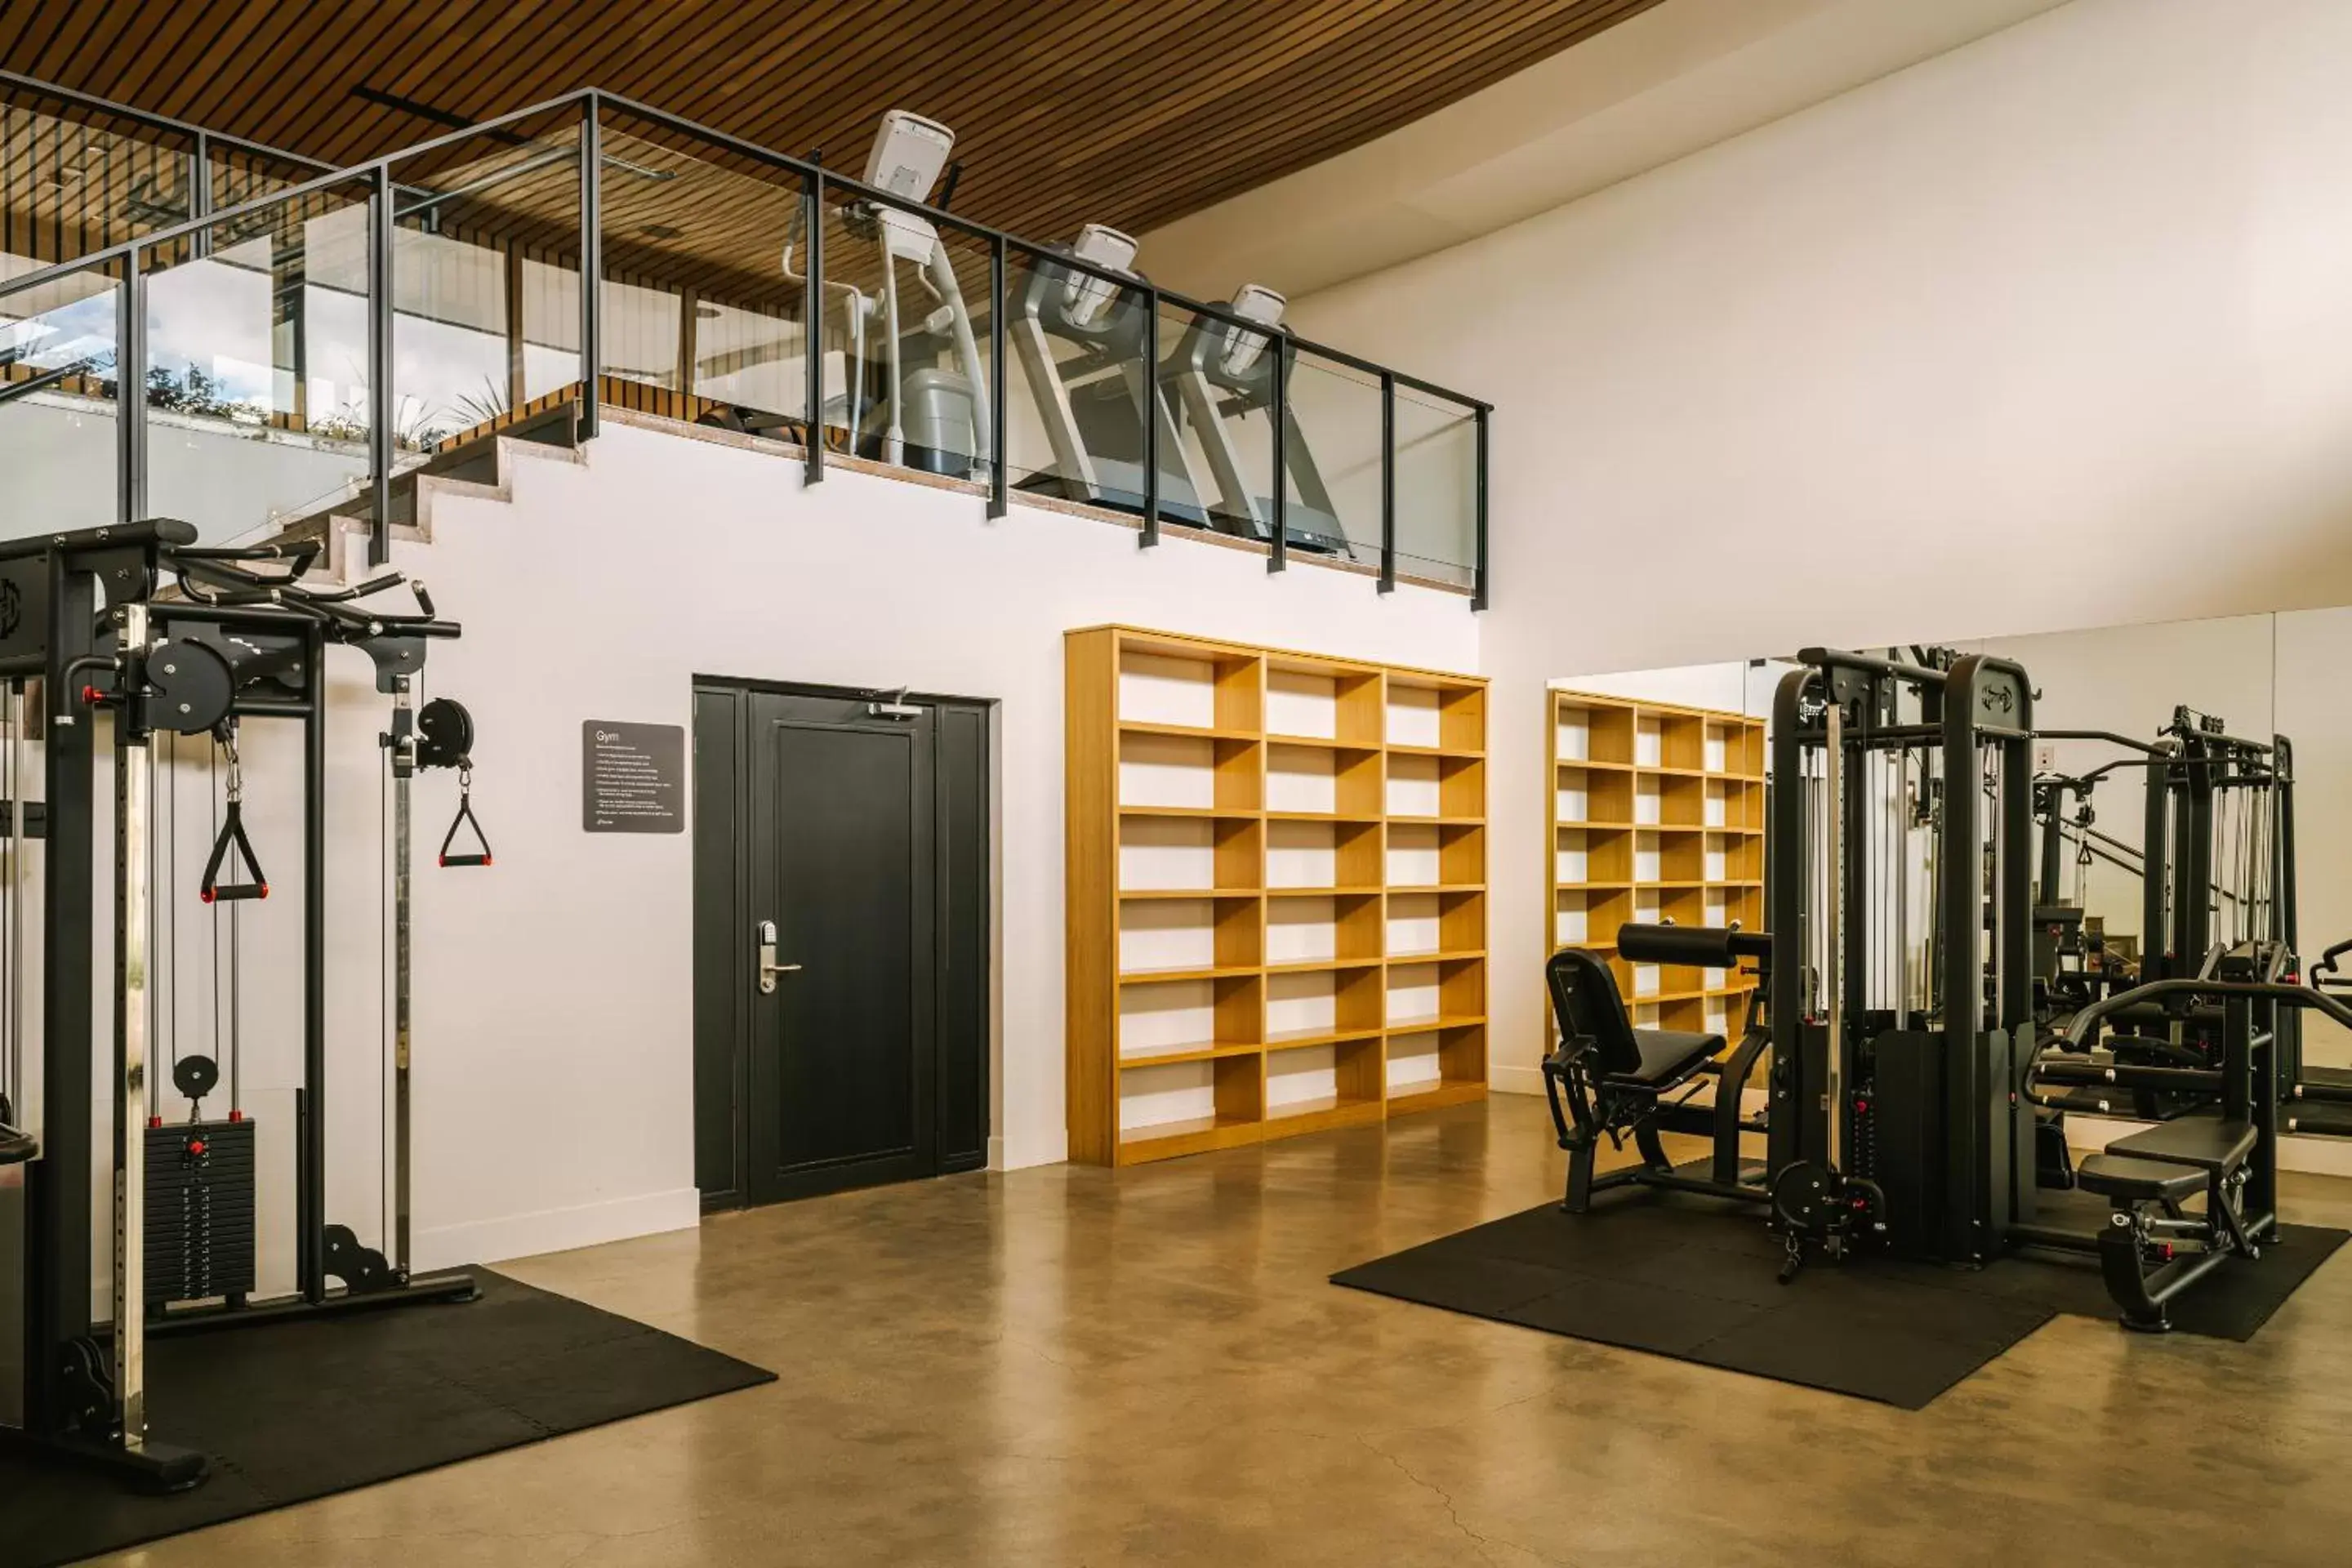 Fitness centre/facilities, Fitness Center/Facilities in Sonder Lüm